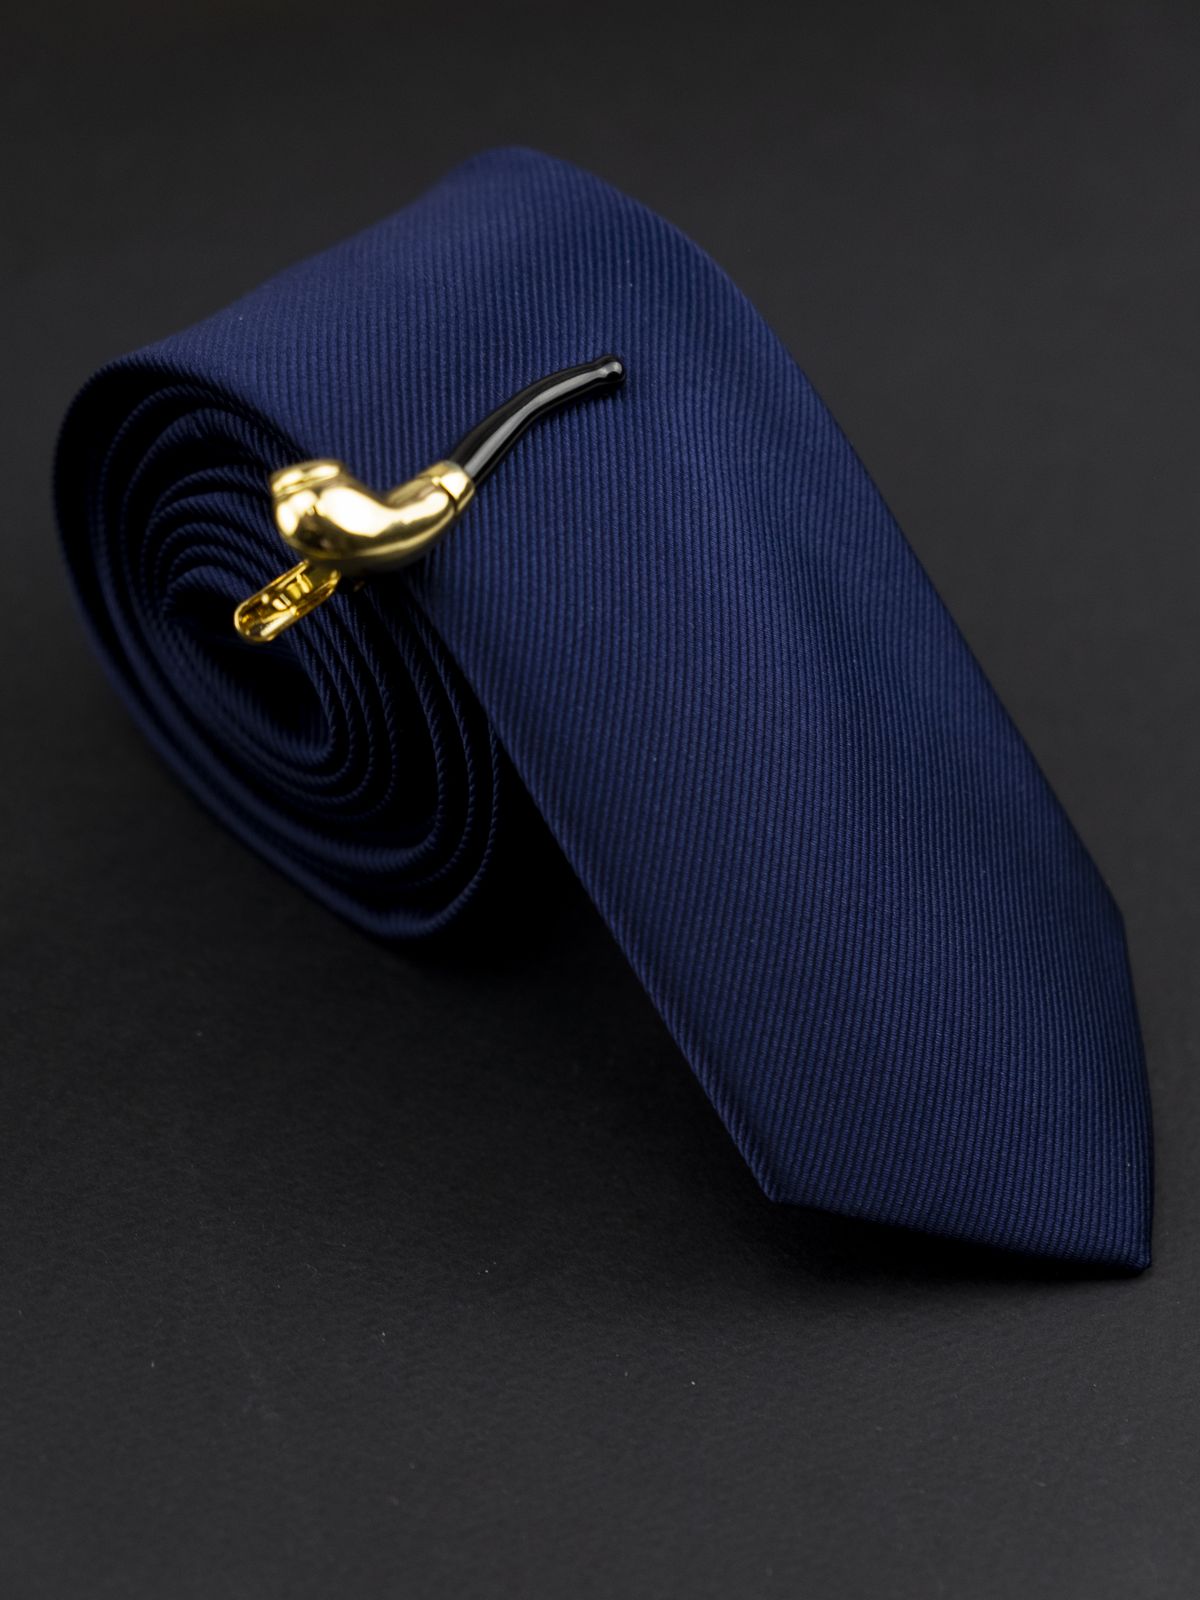 Зажим для галстука трубка купить. Состав: Медь Акрил, Цвет: Черно-золотой, Габариты: 50 мм х 13 мм, Вес: 8 гр.; 